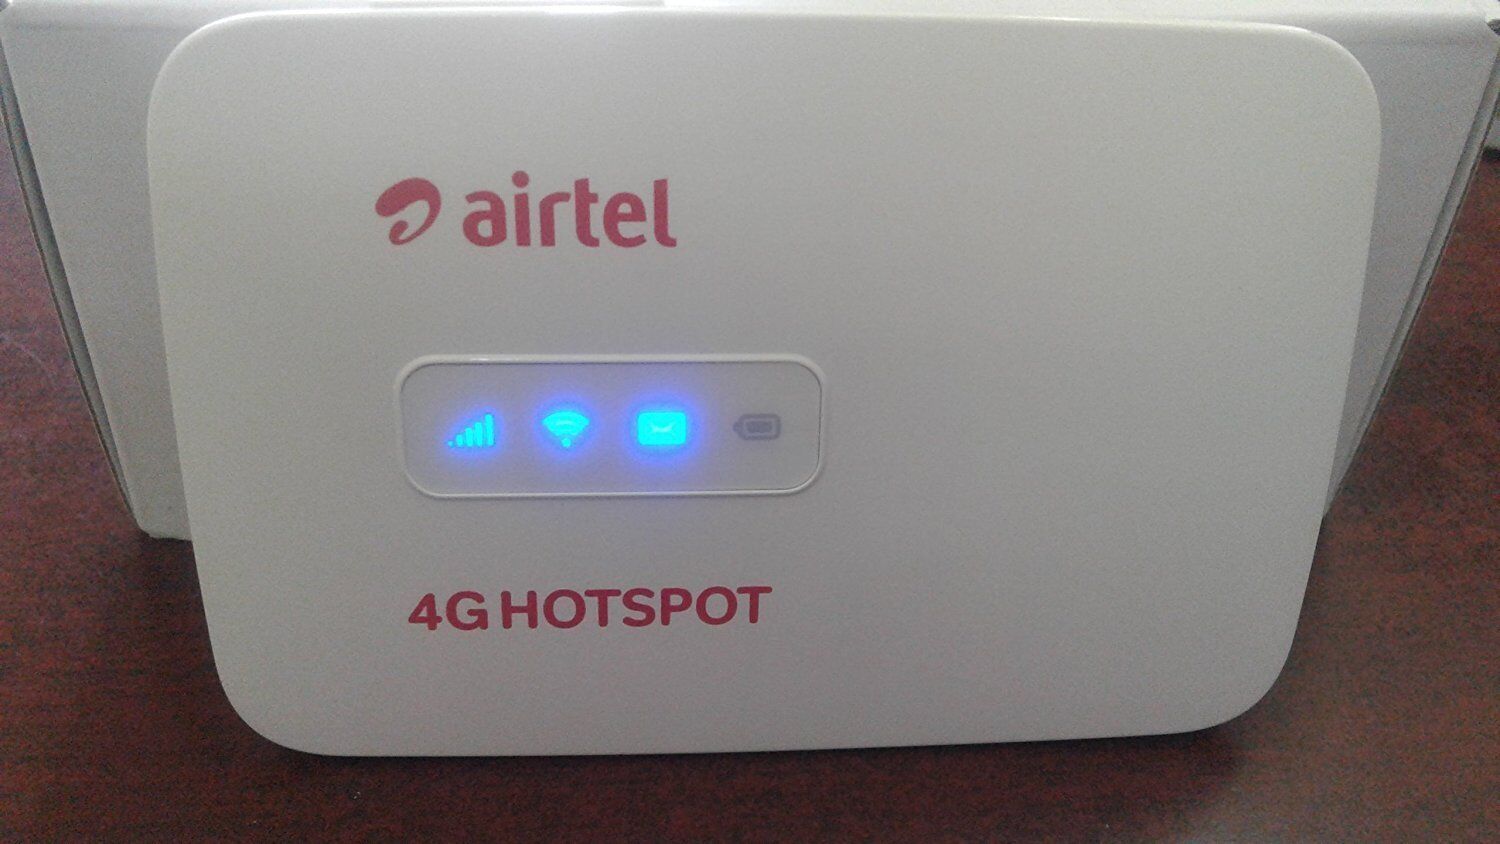 सिर्फ 999 रुपये में यहां मिल रहा Airtel का 4G हॉटस्पॉट